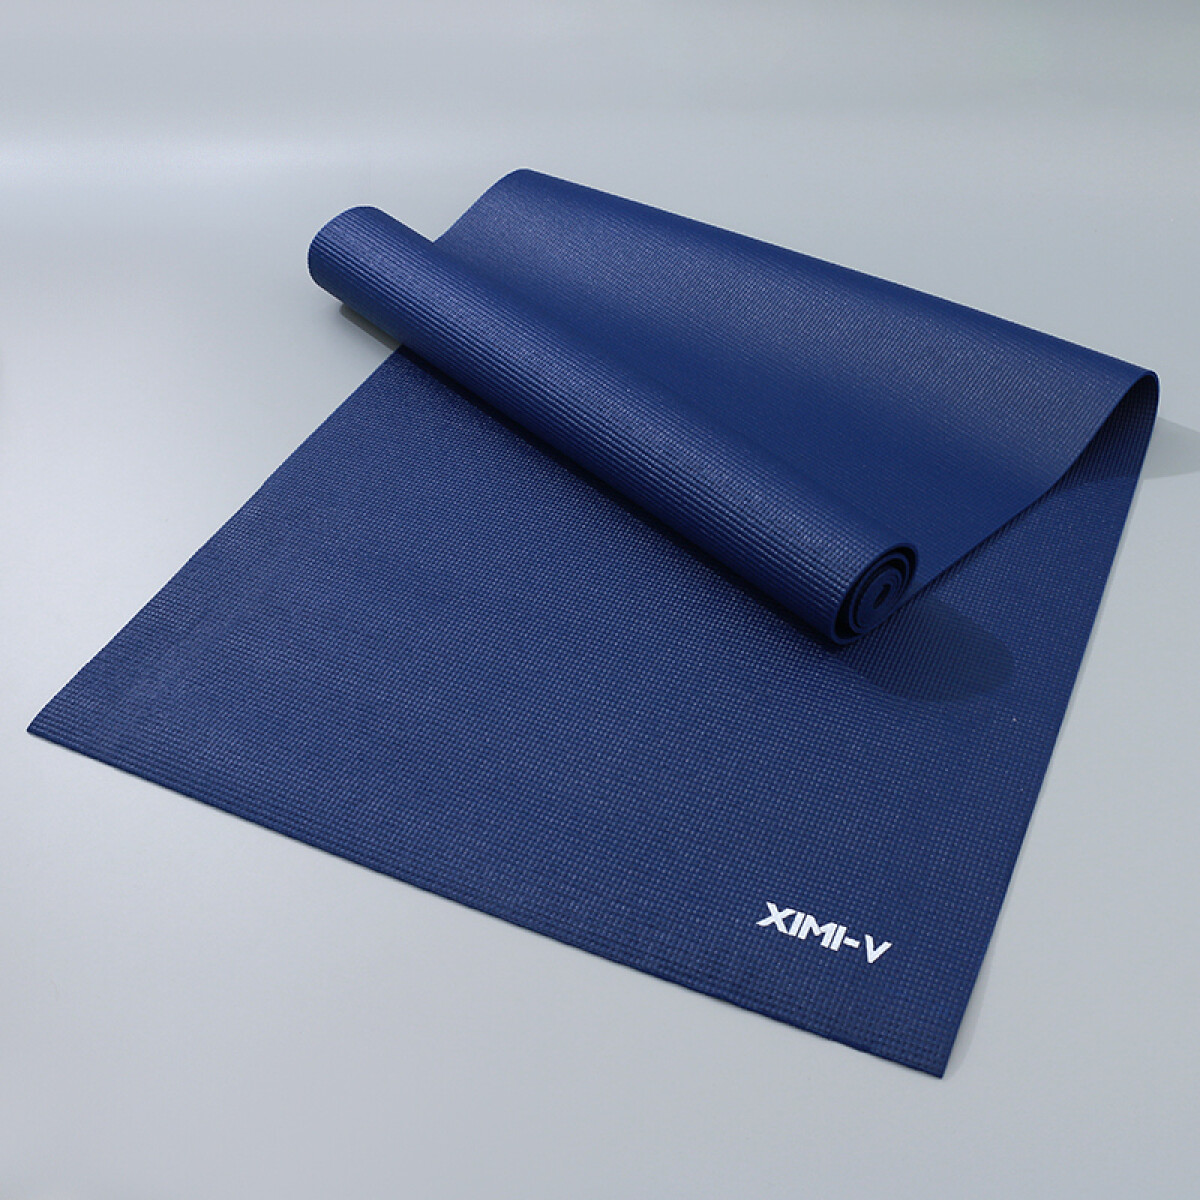 Yoga Mat Con Correa Para Transportar - Azul - Unica 